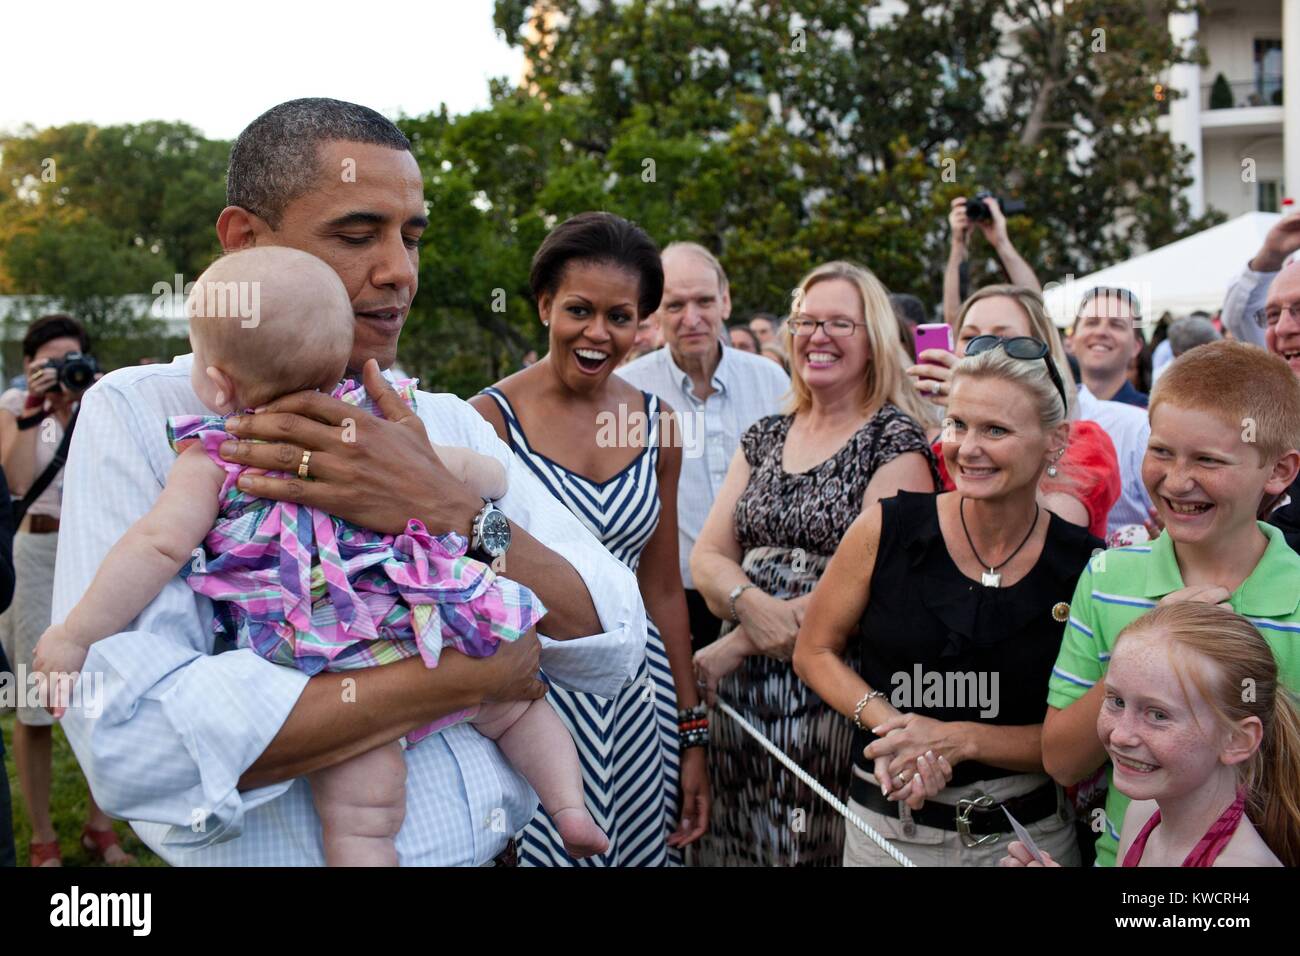 Präsident Barack Obama beruhigt ein schreiendes Baby im Kongreß Picknick. Wenn er nahm das Baby von Michelle es hörte sofort auf zu schreien, damit Ihr und andere 'amüsiert Ausdrücke. South Lawn des Weißen Hauses, 15. Juni 2011. (BSLOC 2015 3 28) Stockfoto